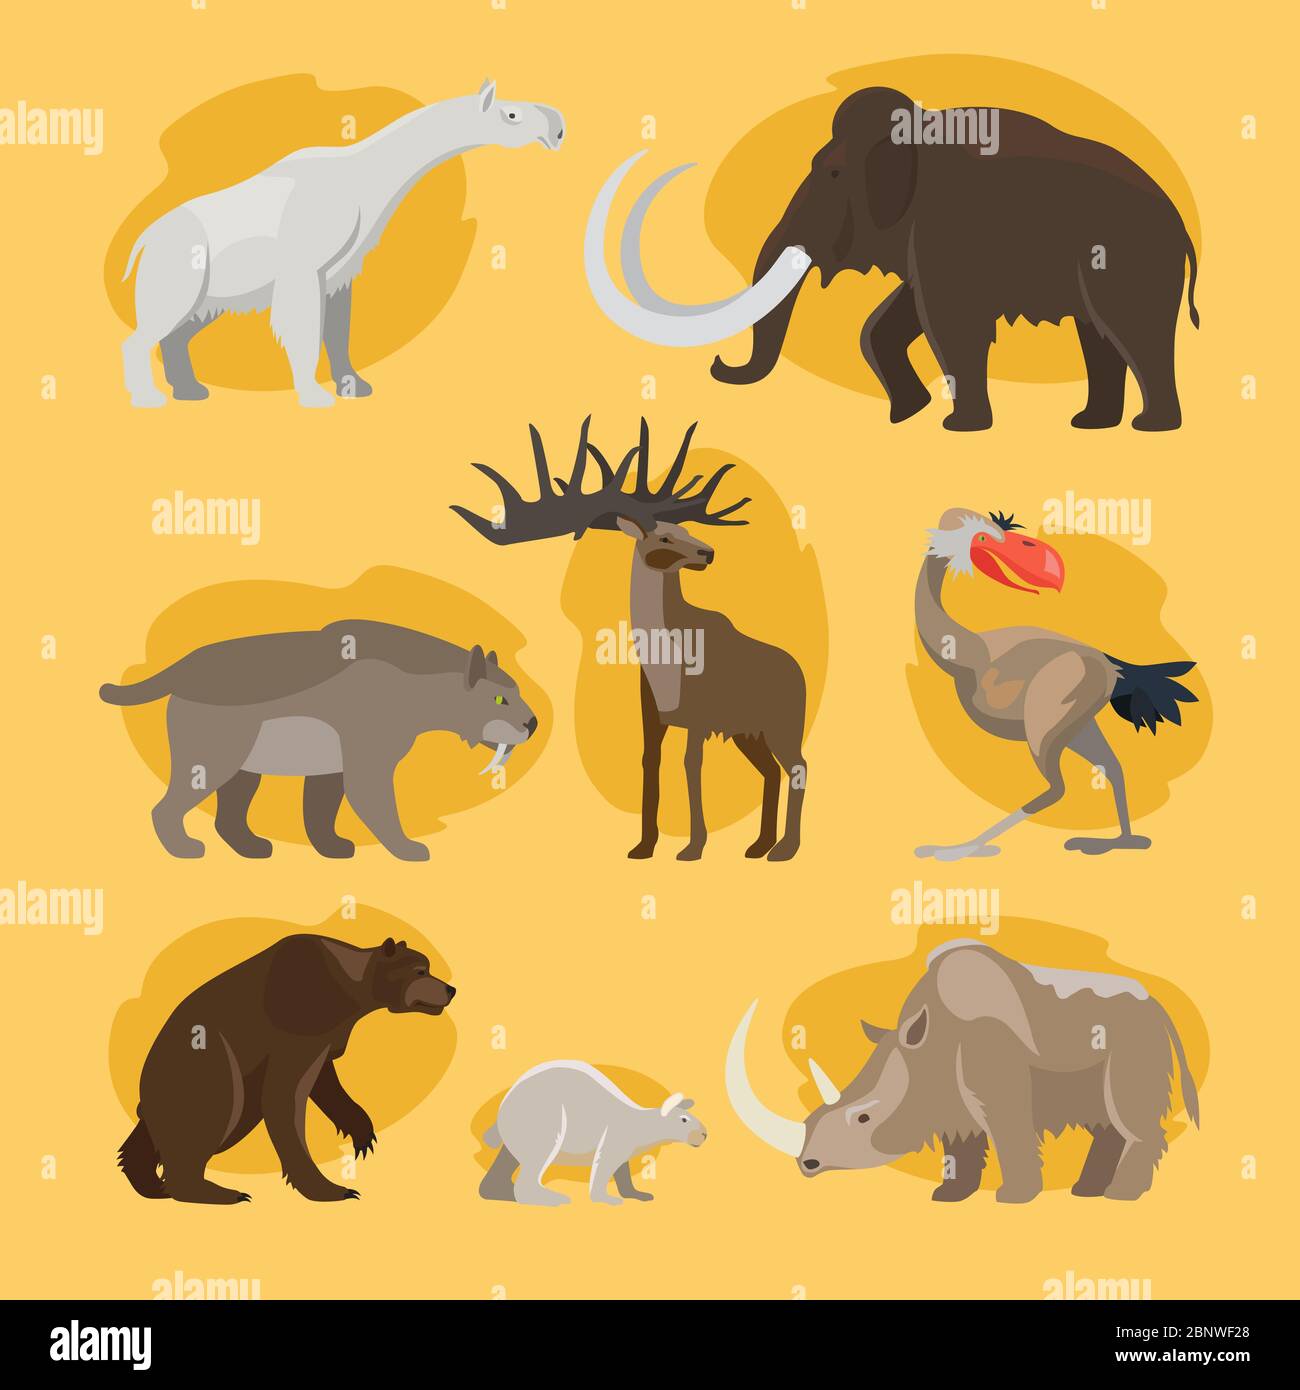 ice age animals names